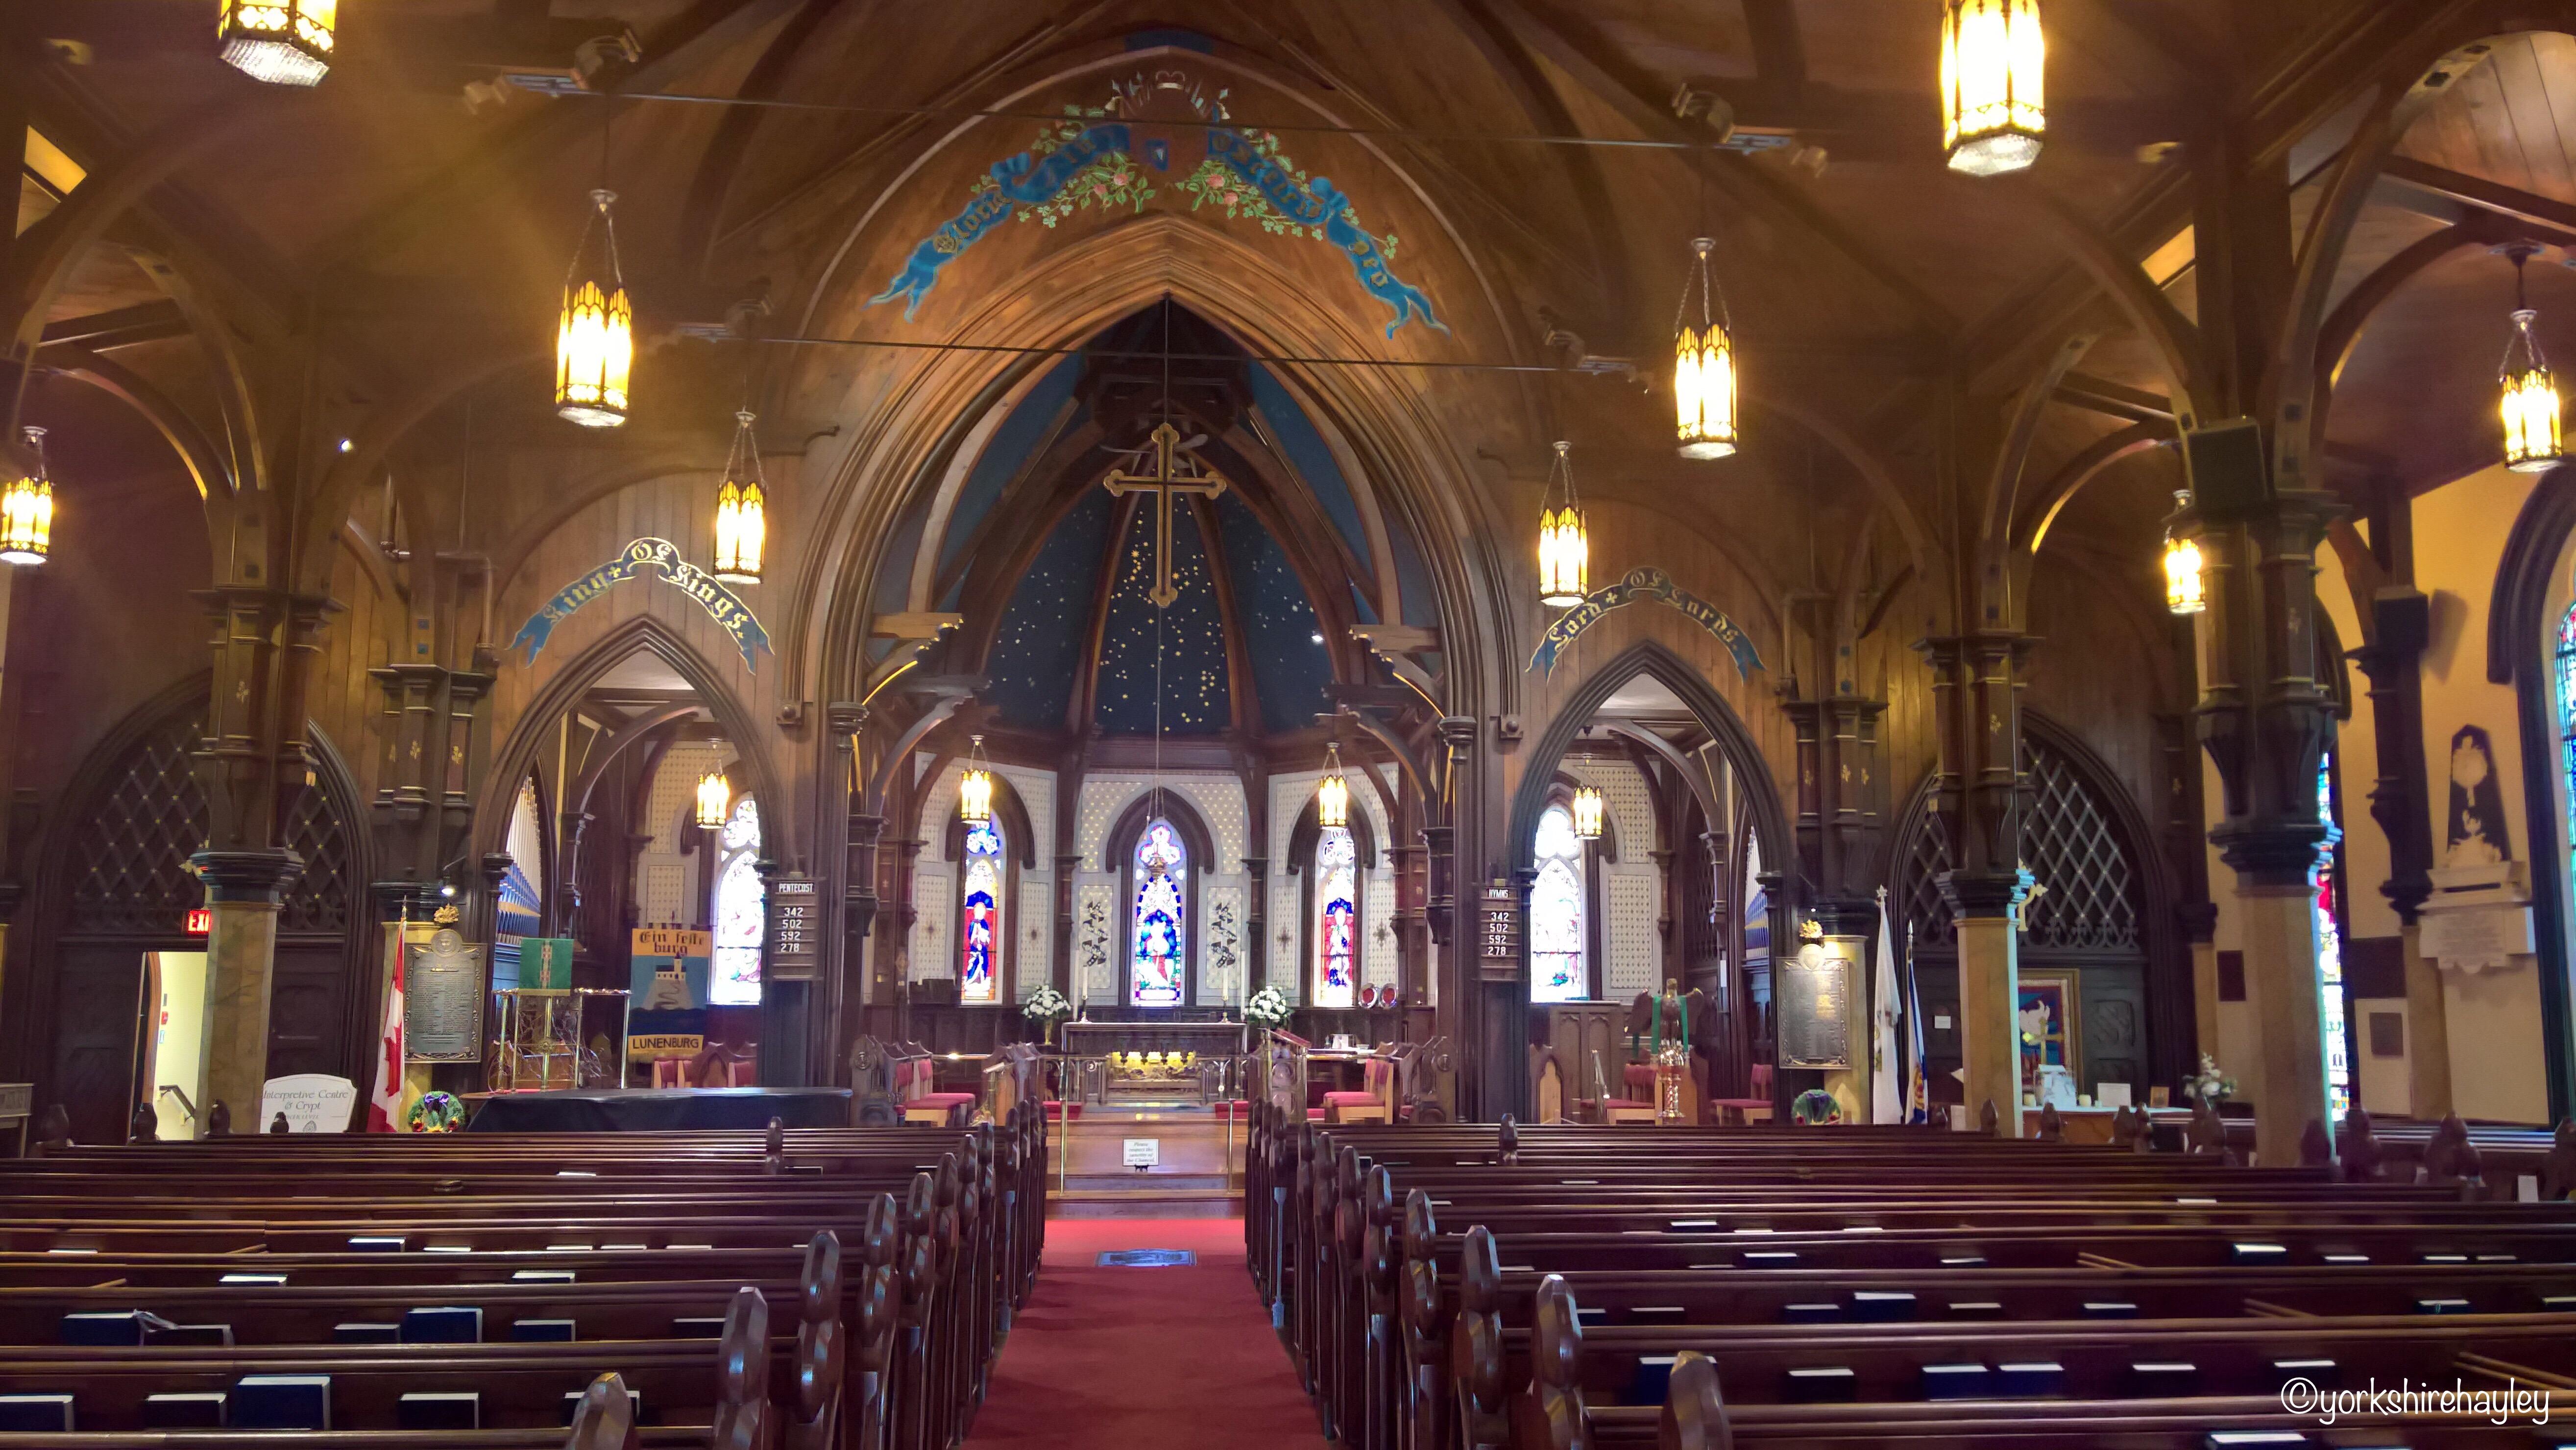 The stunning interior of St John